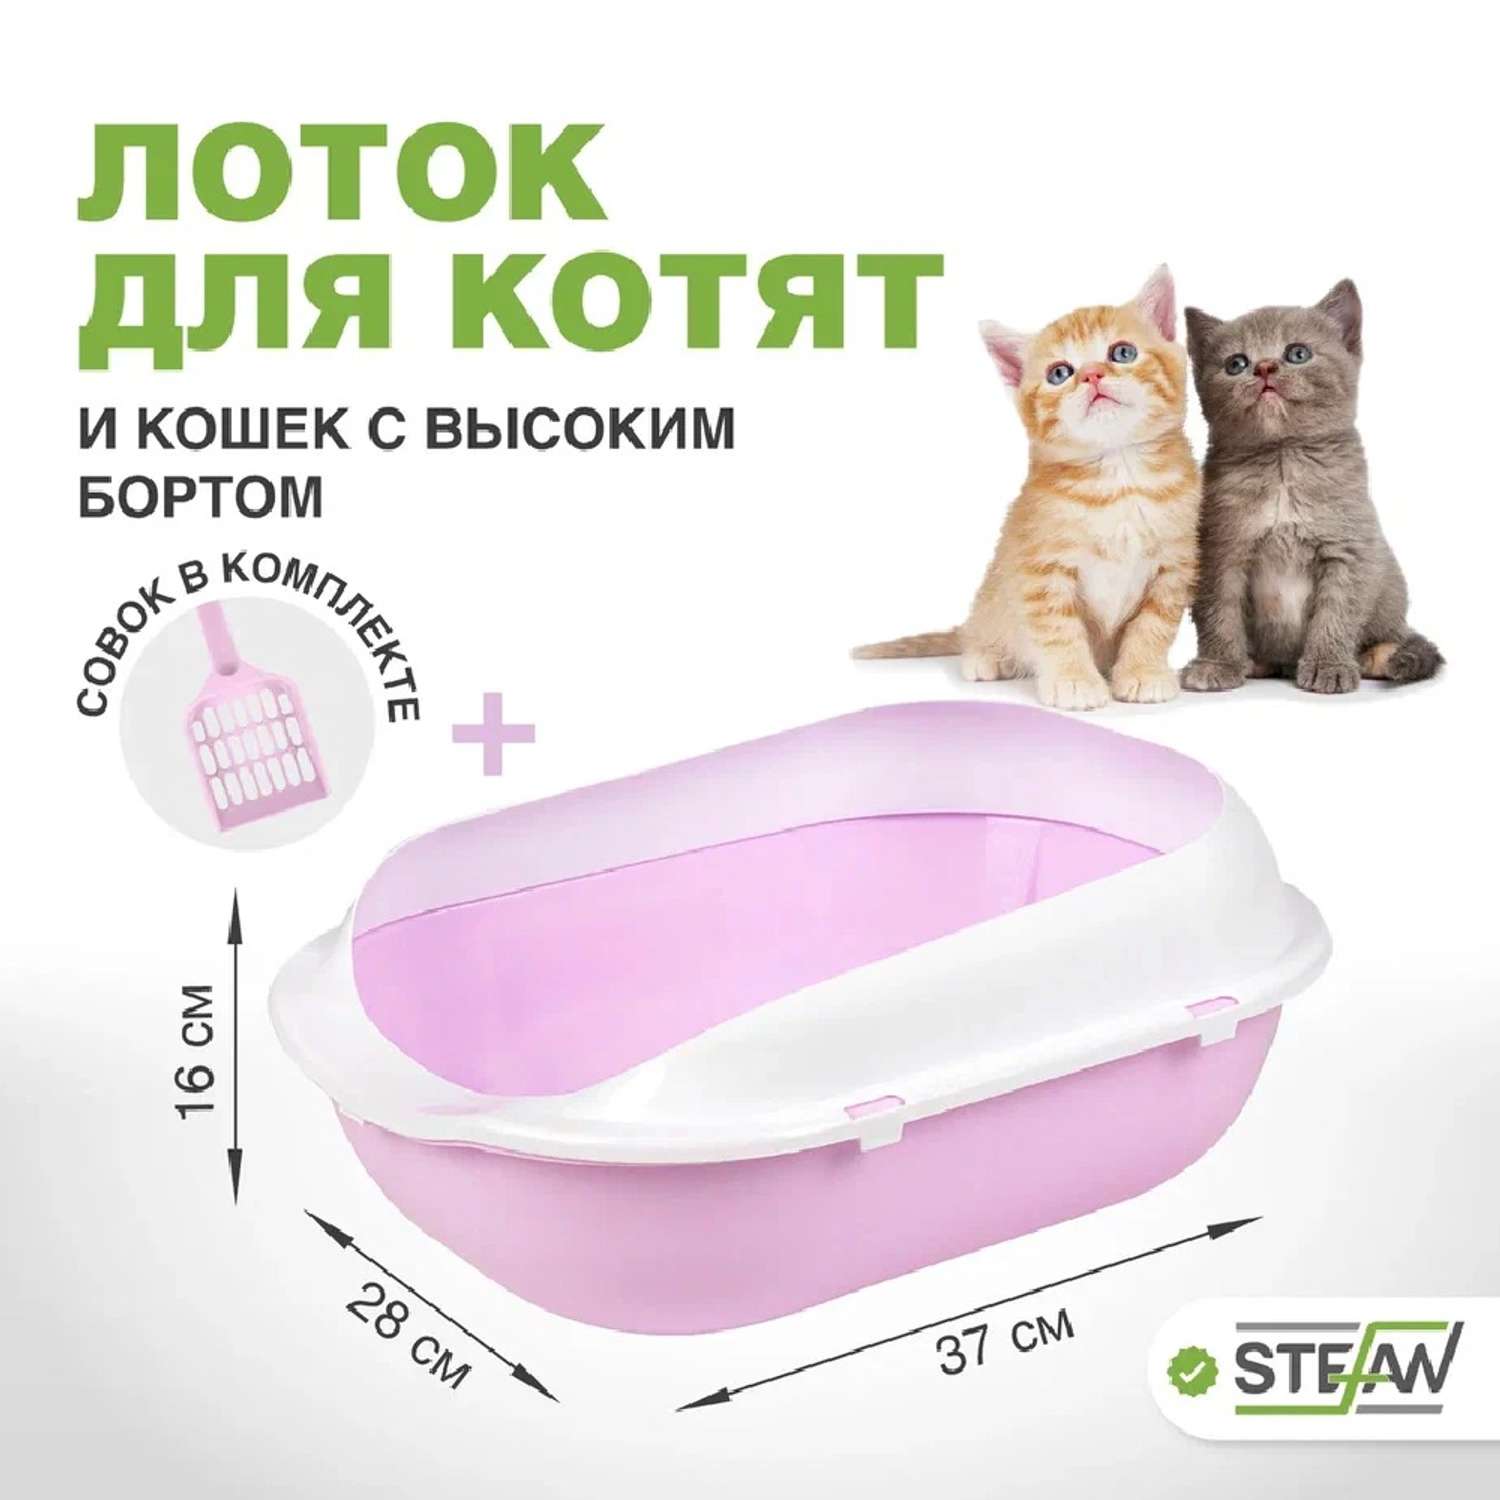 Туалет-лоток для кошек Stefan с высоким бортом и совком 37х28х16 см лиловый - фото 1